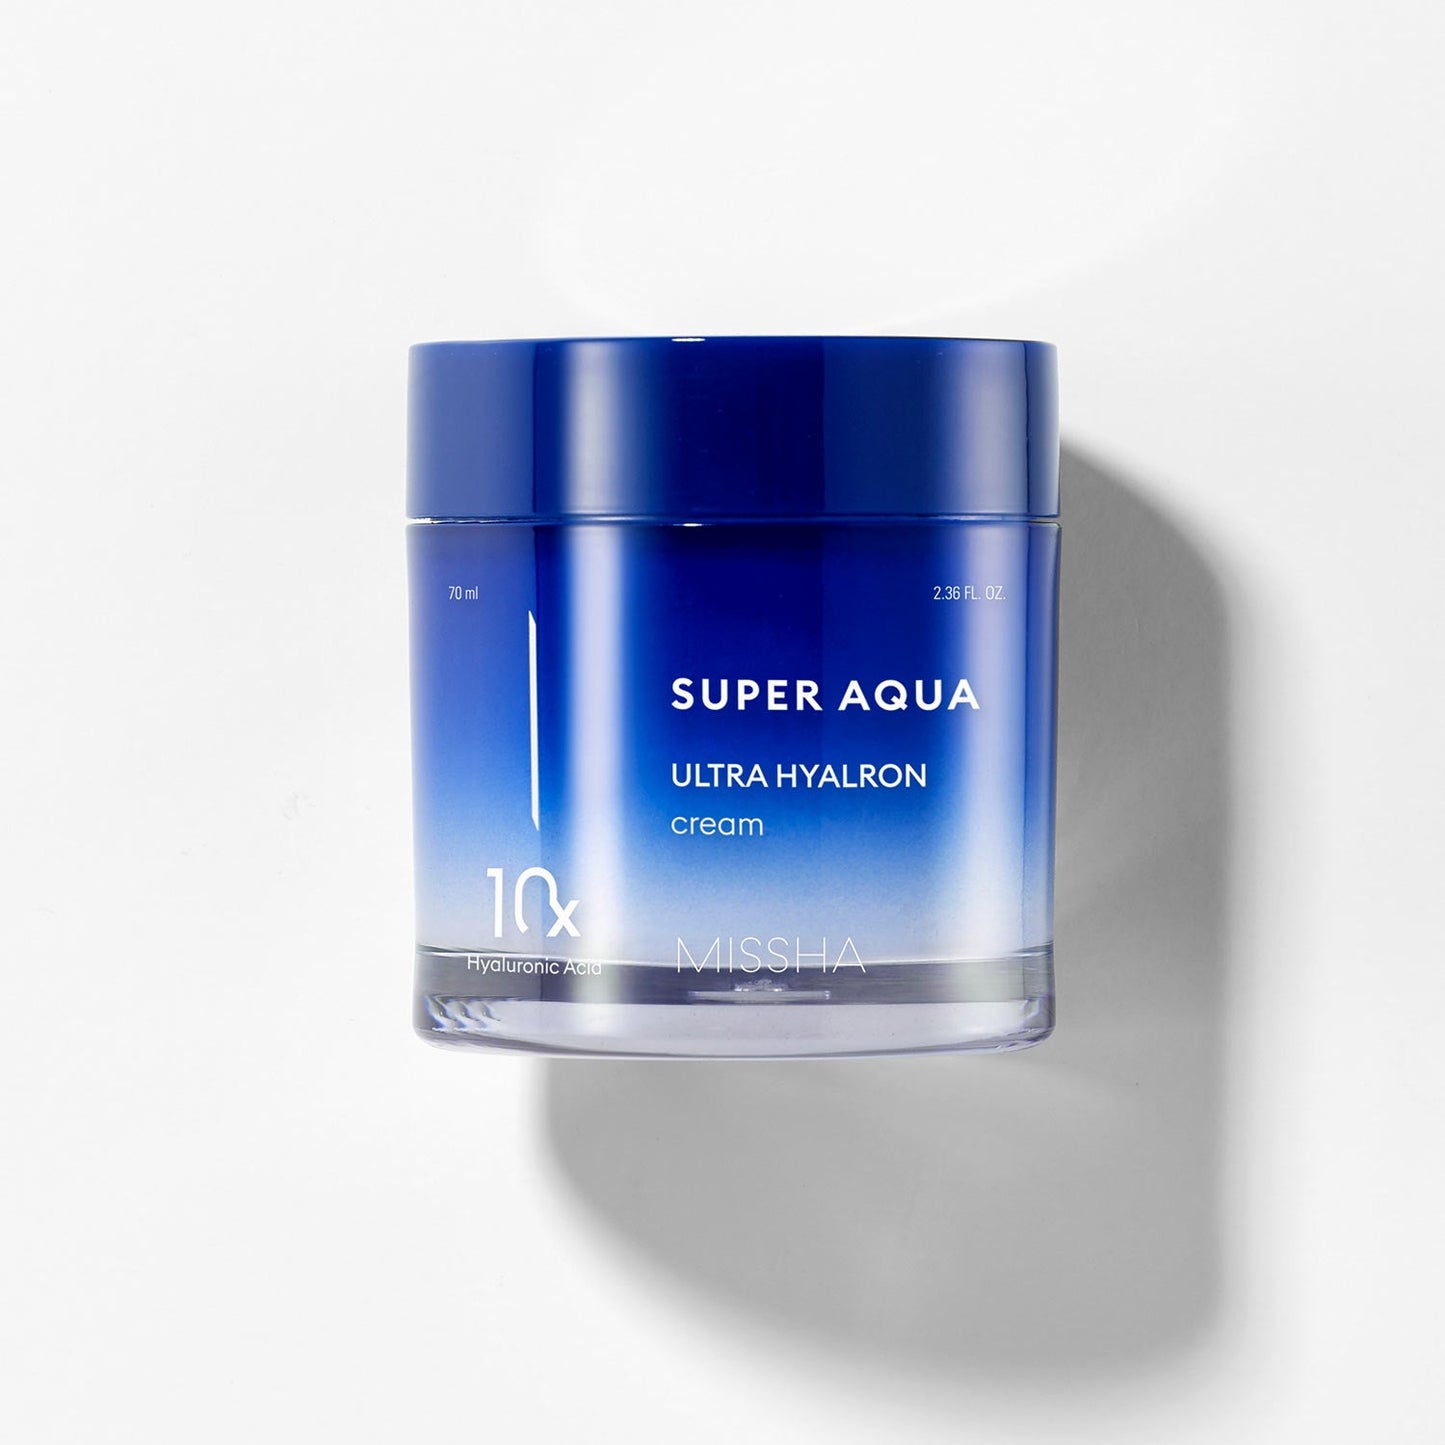 Super Aqua Ultra Hyalron Cream - Hidratación con Ácido Hialurónico y Niacinamida